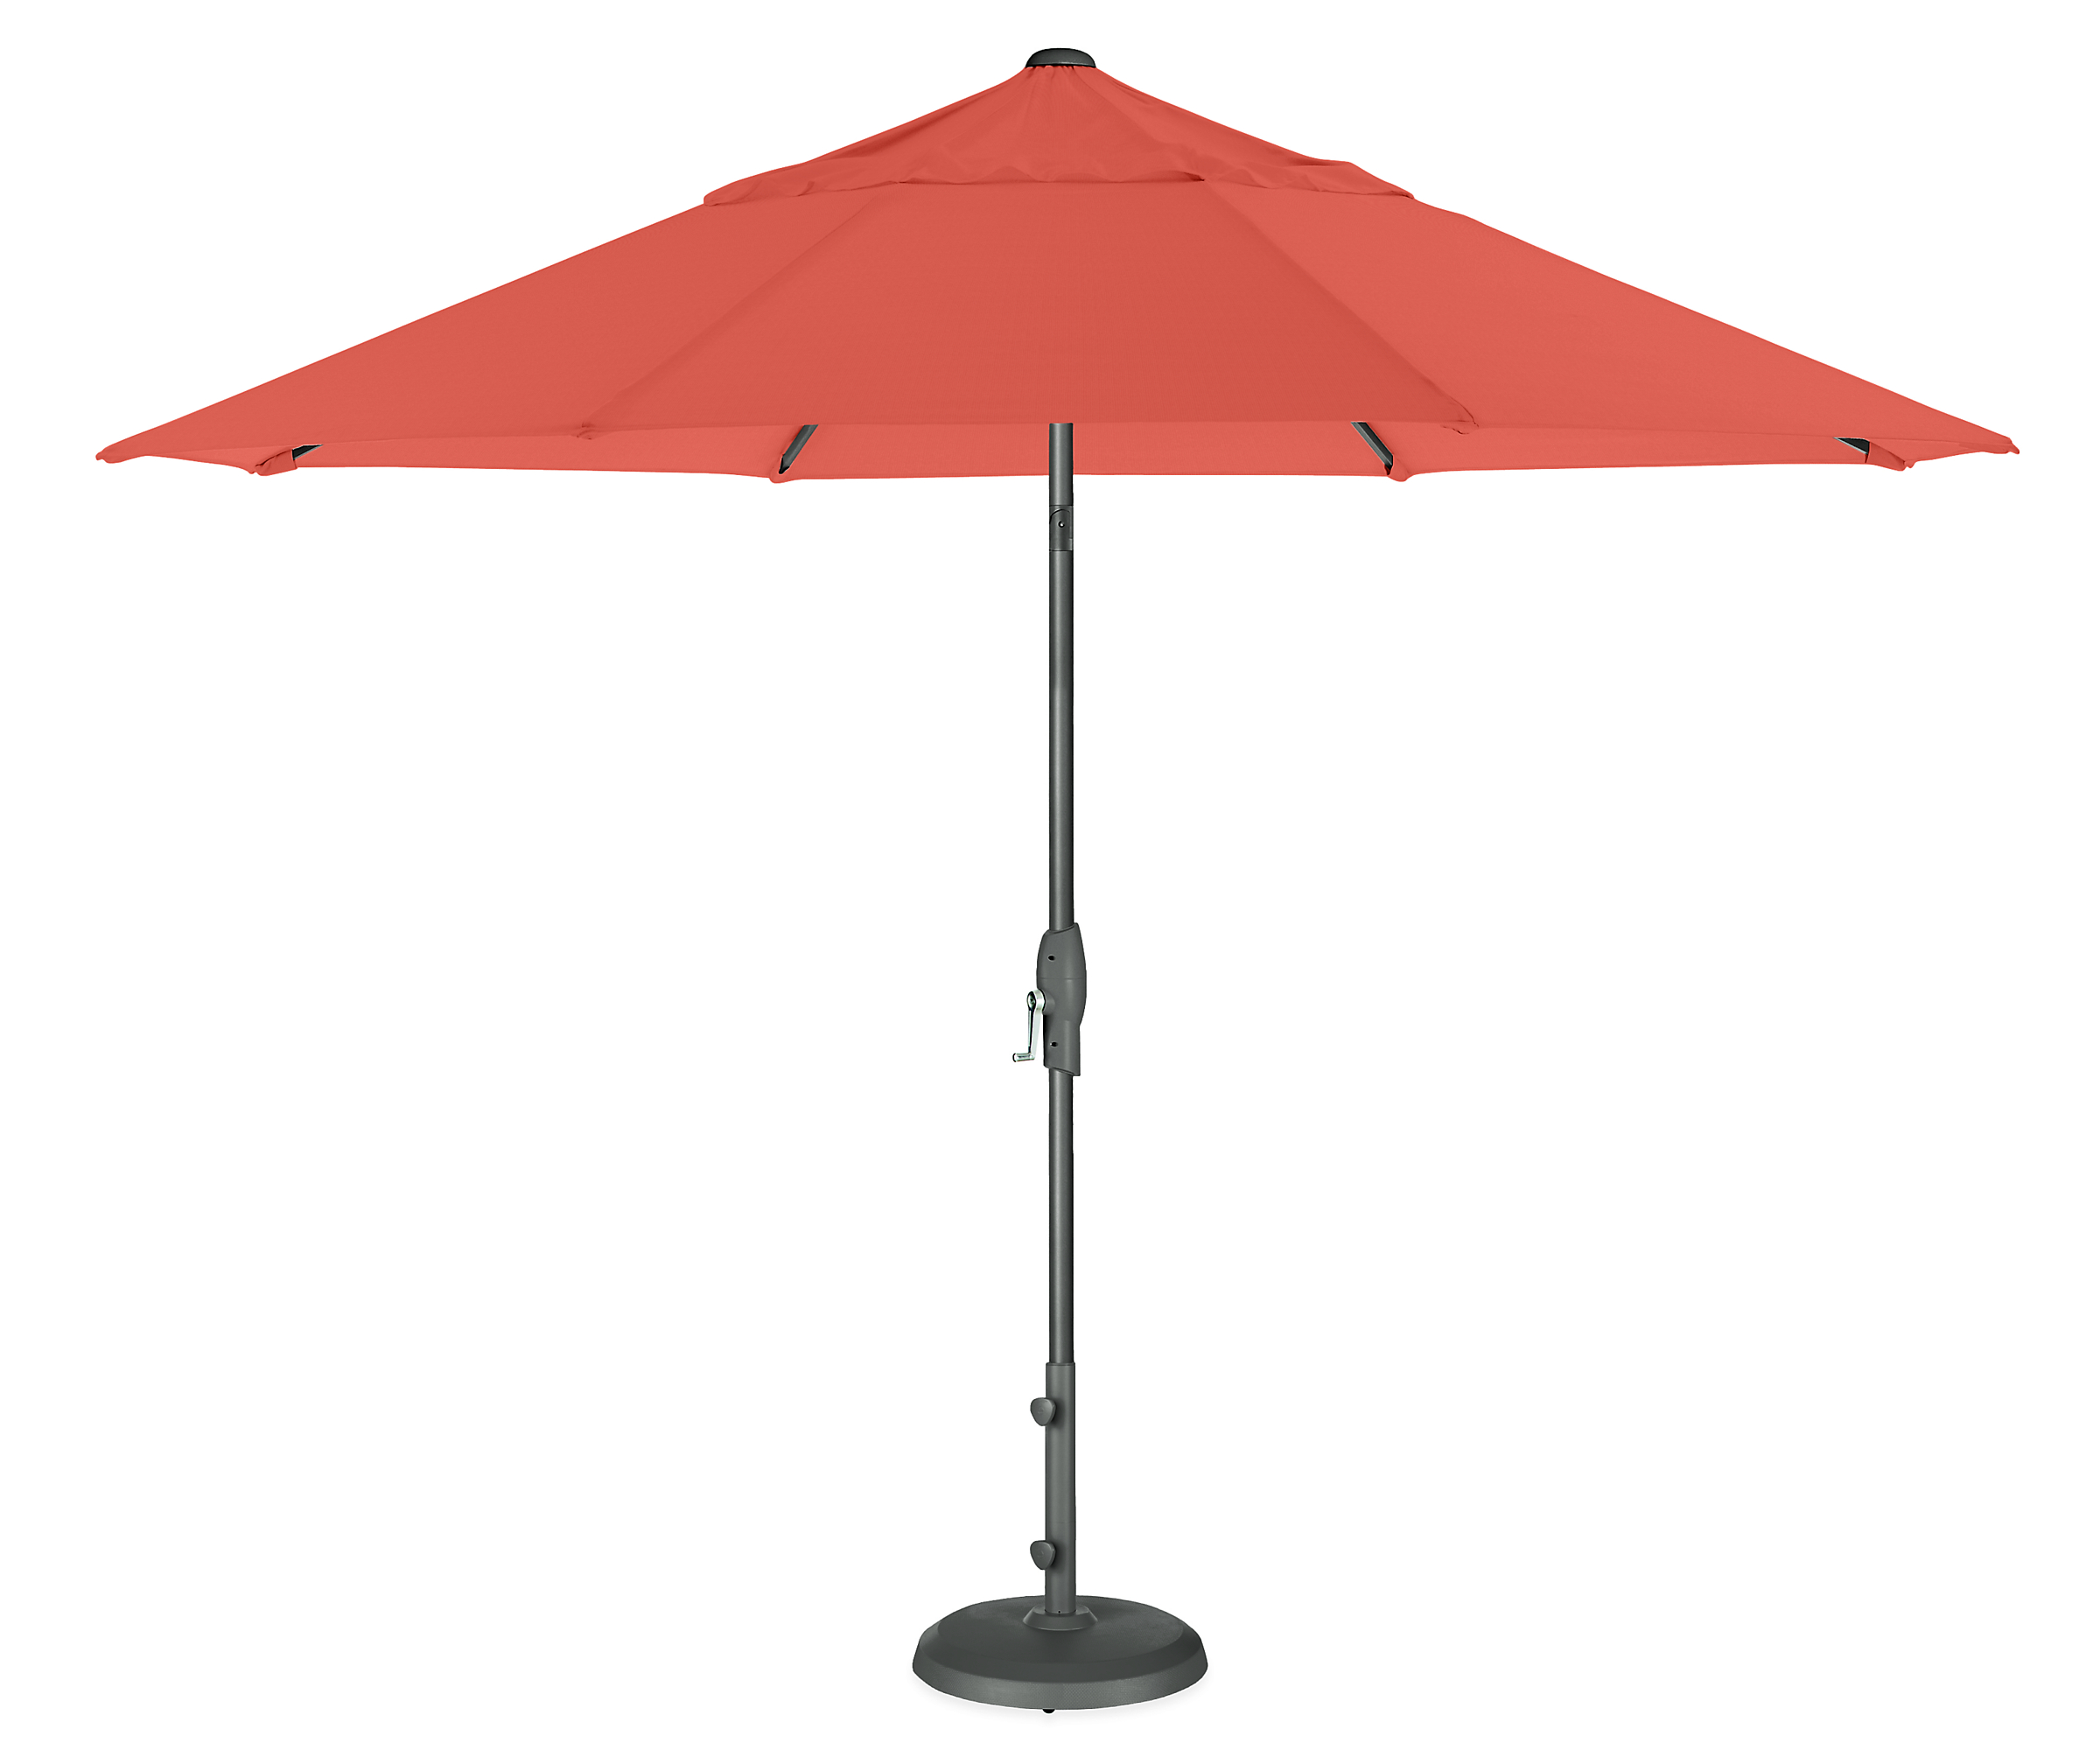 Oahu 11' Round Patio Umbrella in Sunbrella Canvas Orange with Graphite Base